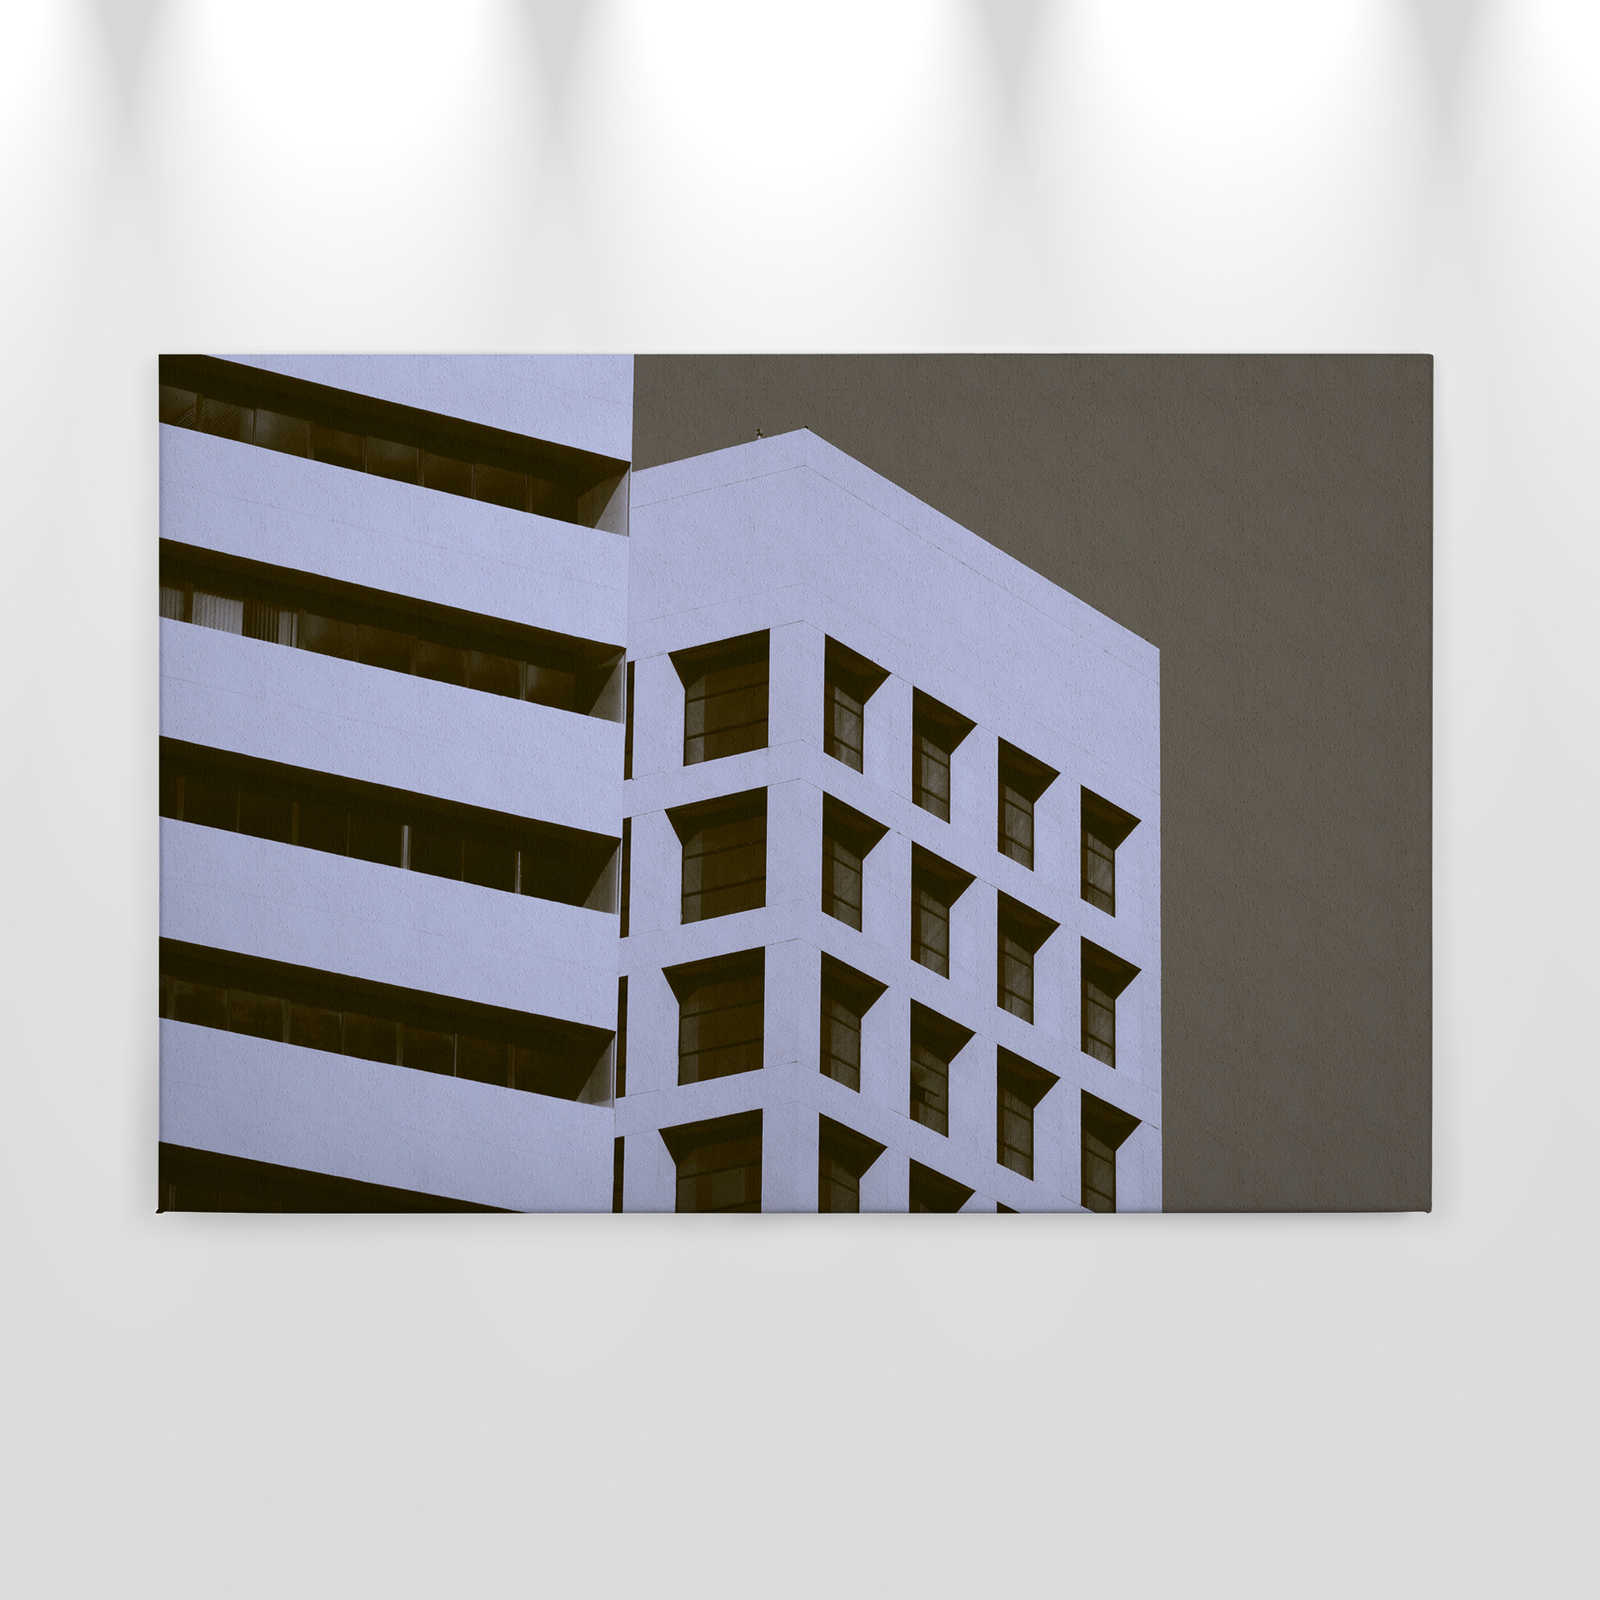             Rascacielos 1 - Pintura en lienzo con edificio de aspecto retro en estructura rugosa - 0,90 m x 0,60 m
        